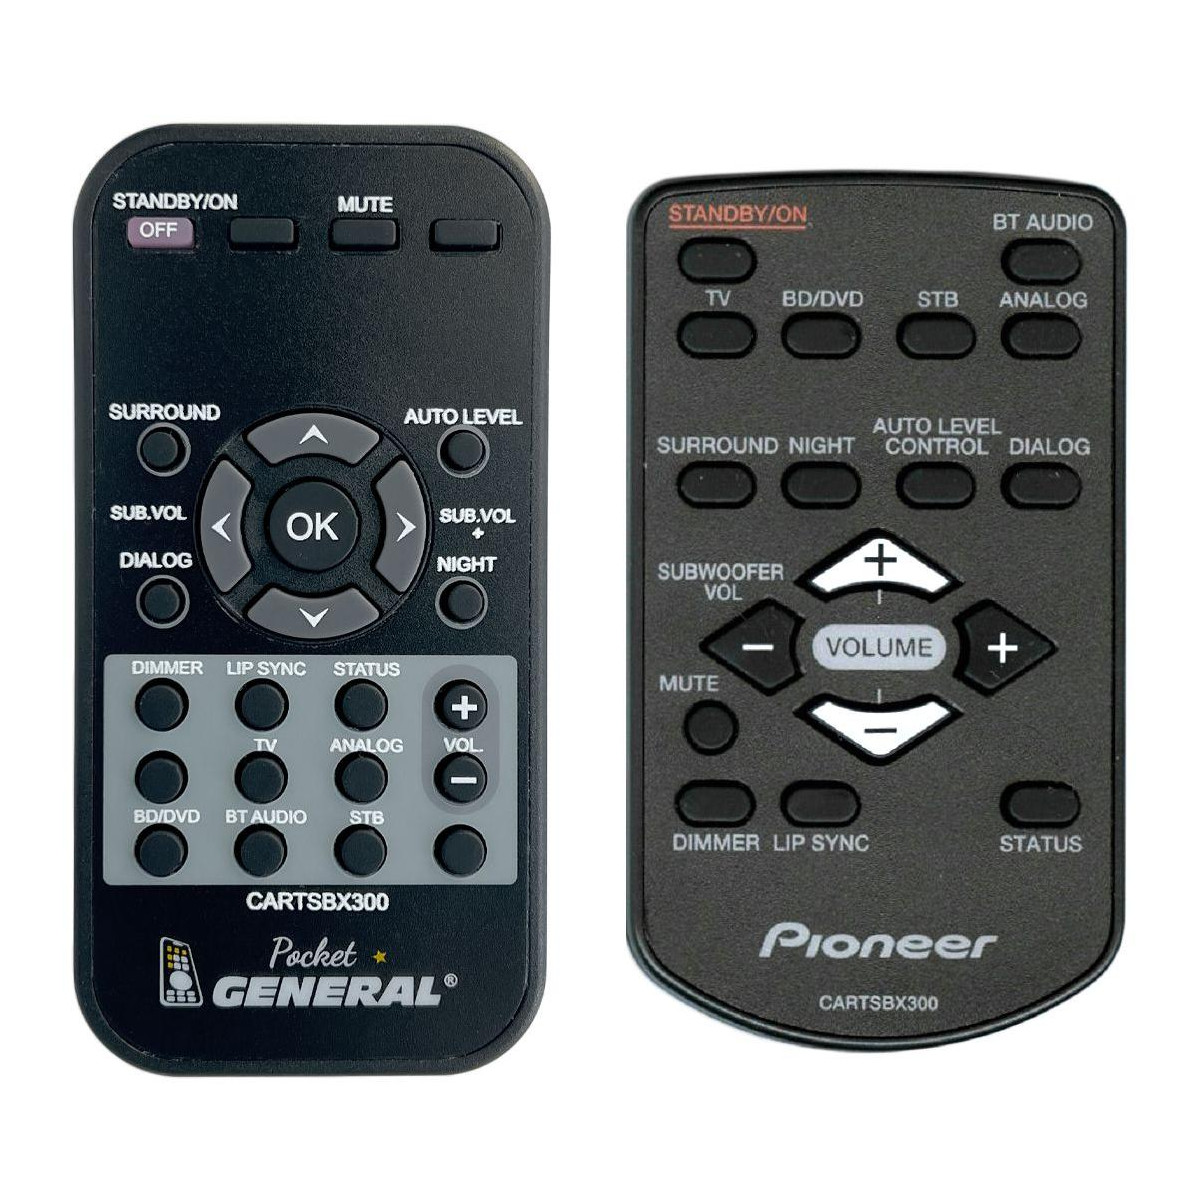 More about PIONEER CARTSBX300 - dálkový ovladač duplikát kompatibilní